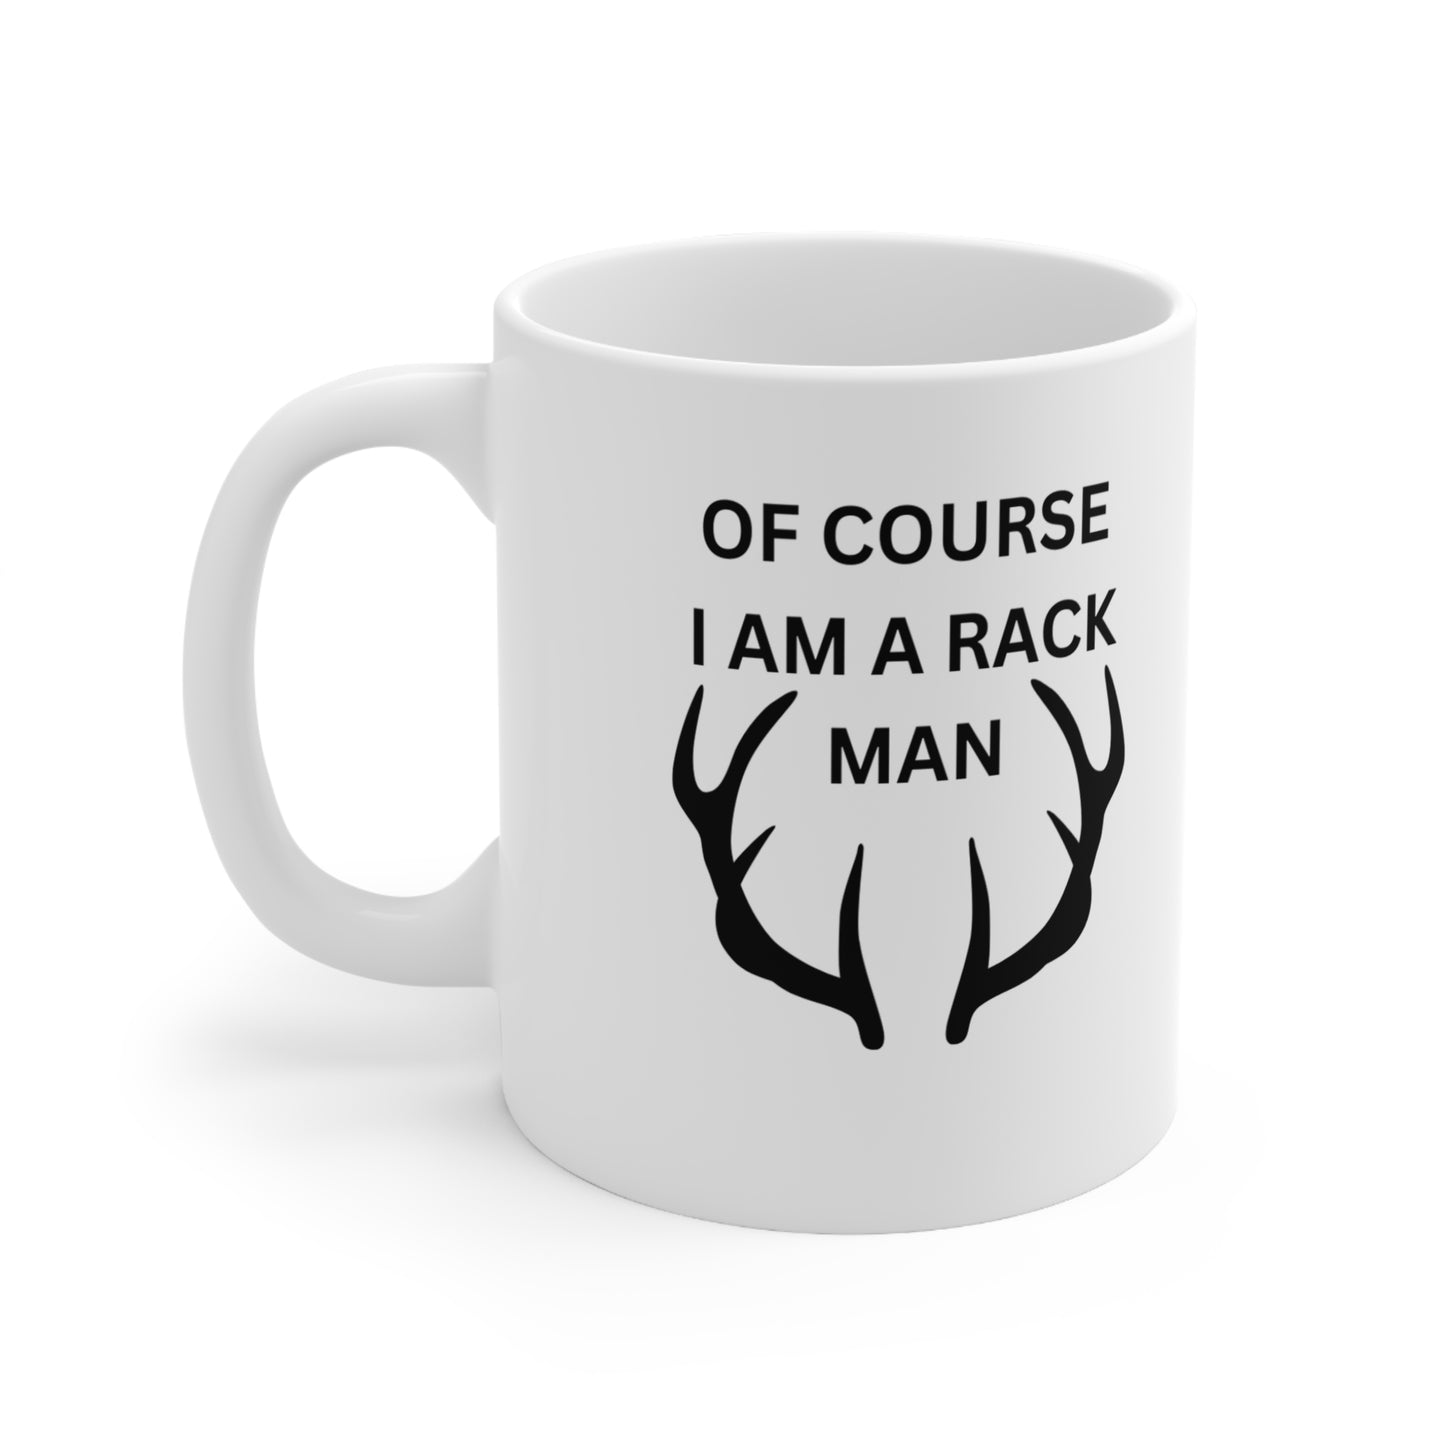 RACK MAN Ceramic Mug 11oz